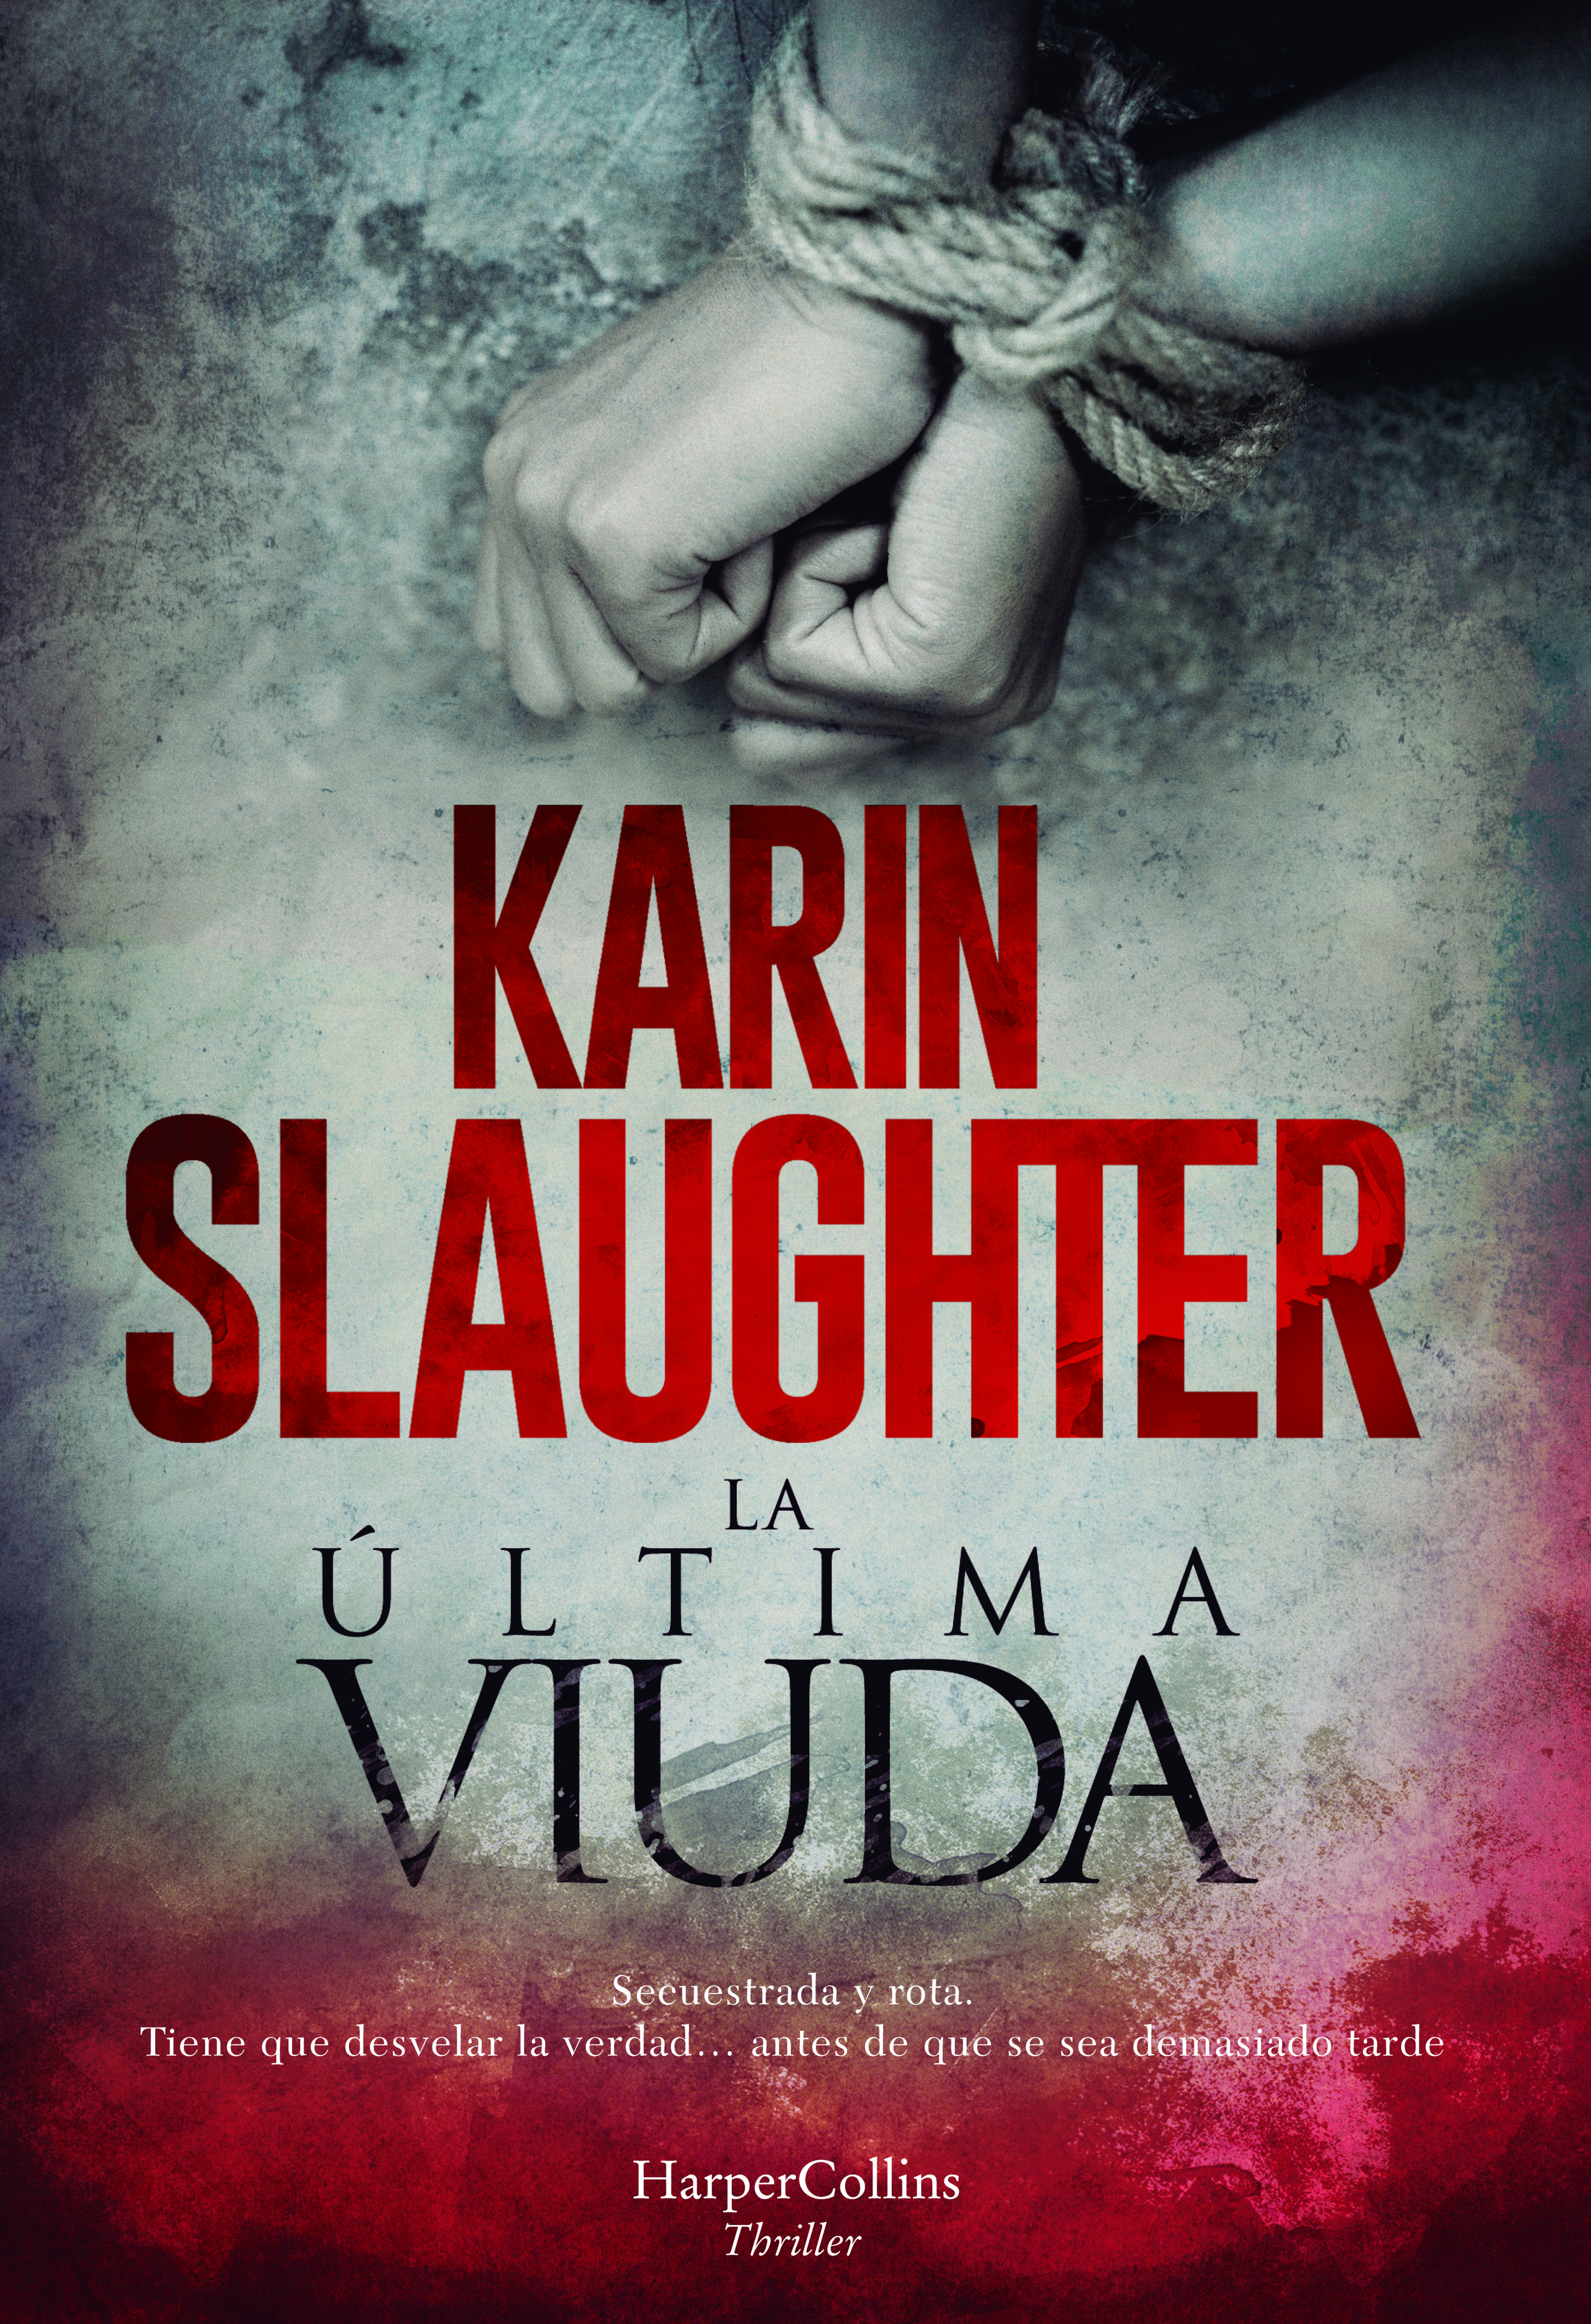 Karin Slaughter vuelve con una nueva novela de intriga: La última viuda